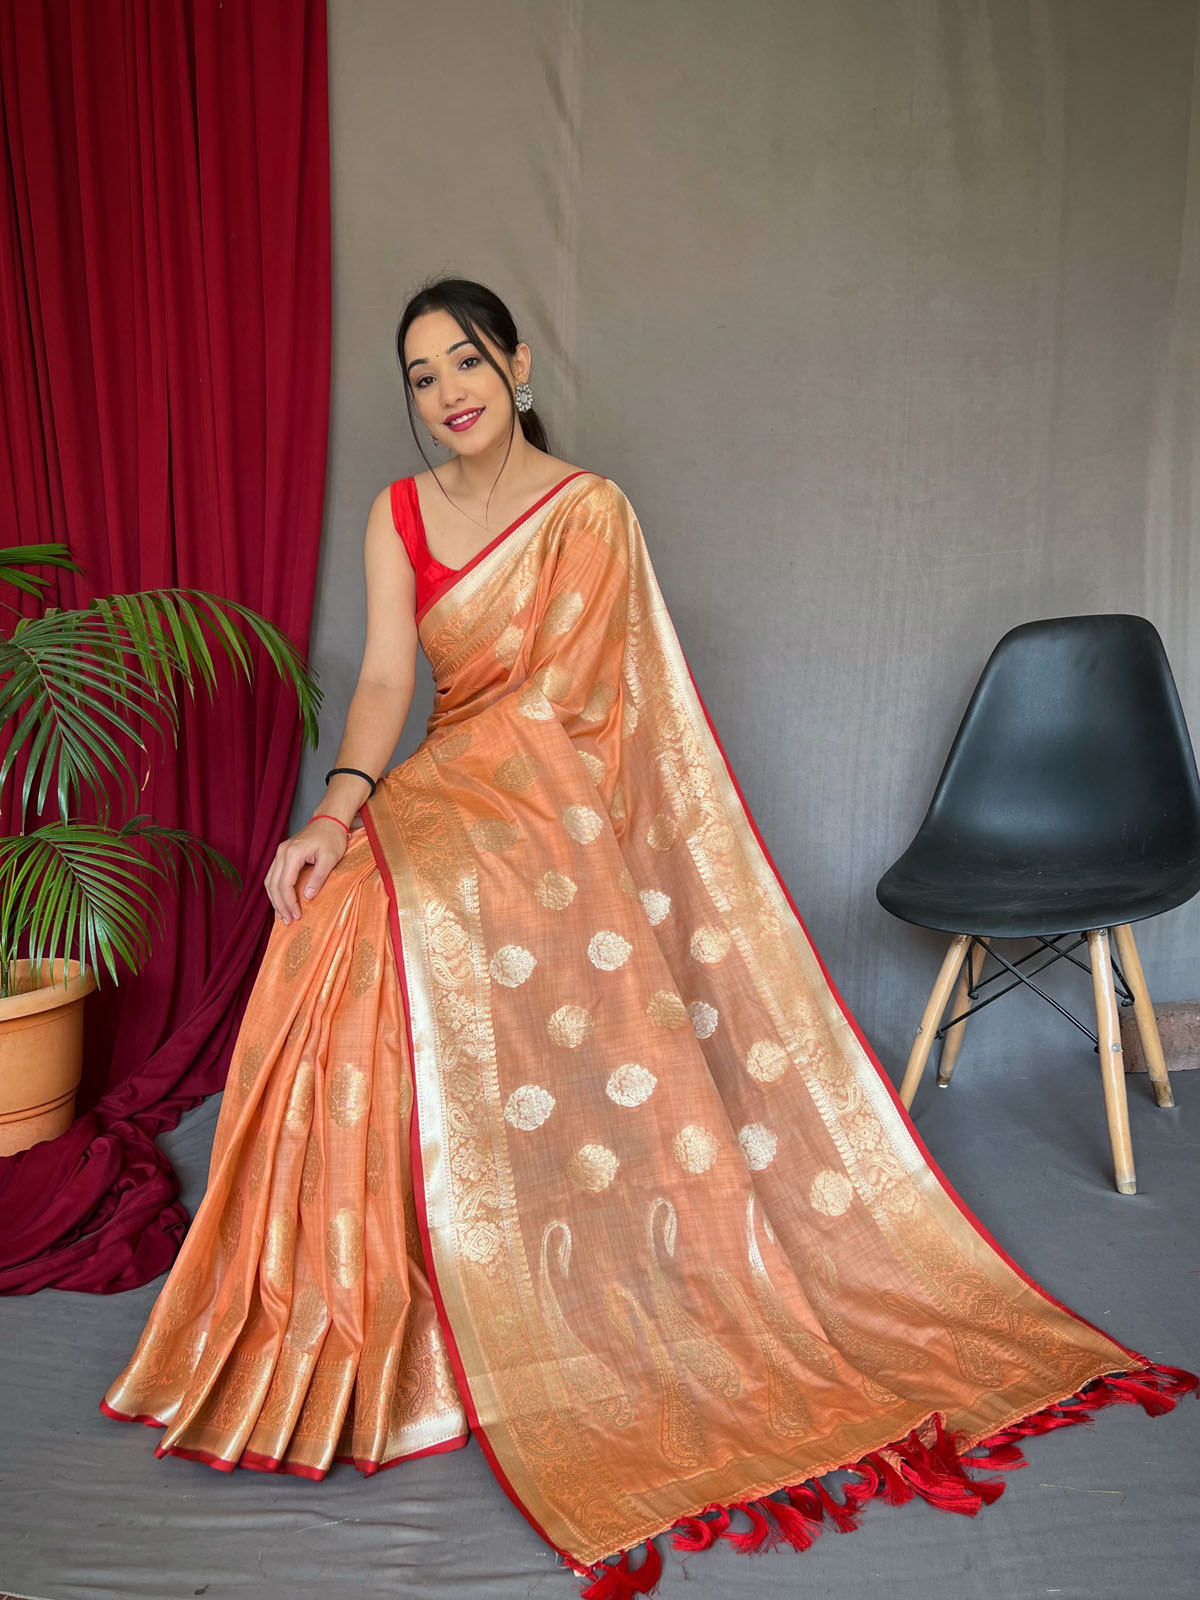 Pure Soft Cotton Saree with Gold Zari Woven & Rich Pallu - Peach